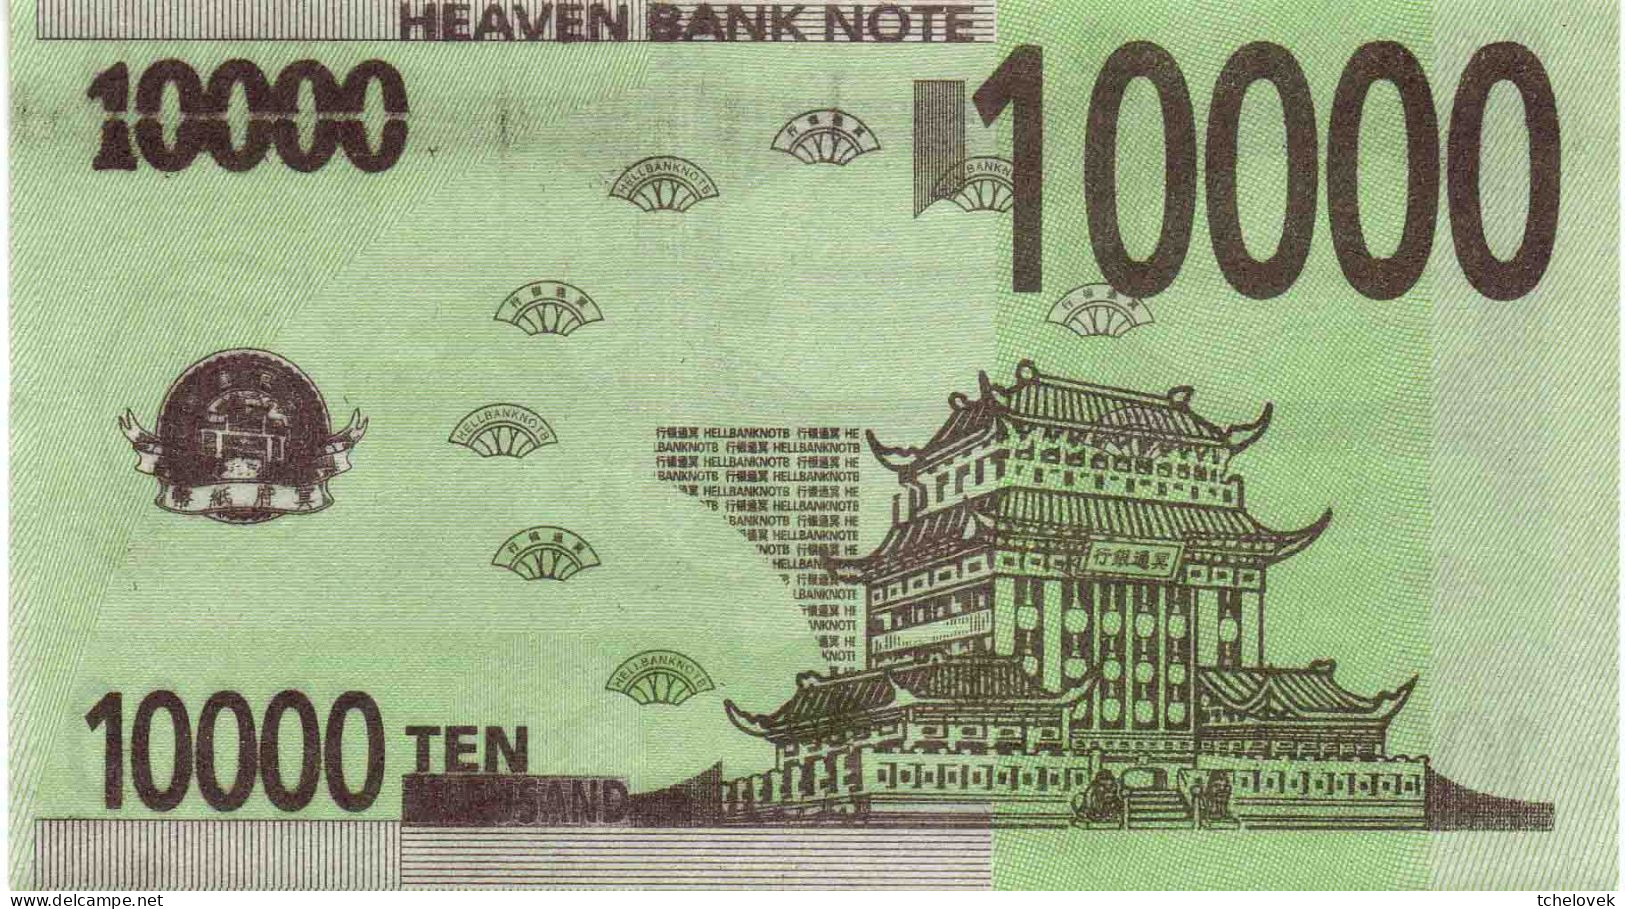 (Billets). Billet Funeraire De 10 000 Heaven Vert Sur Le Modele Des Billets En Euro & 10 000 (1) & 10000 (2) - China